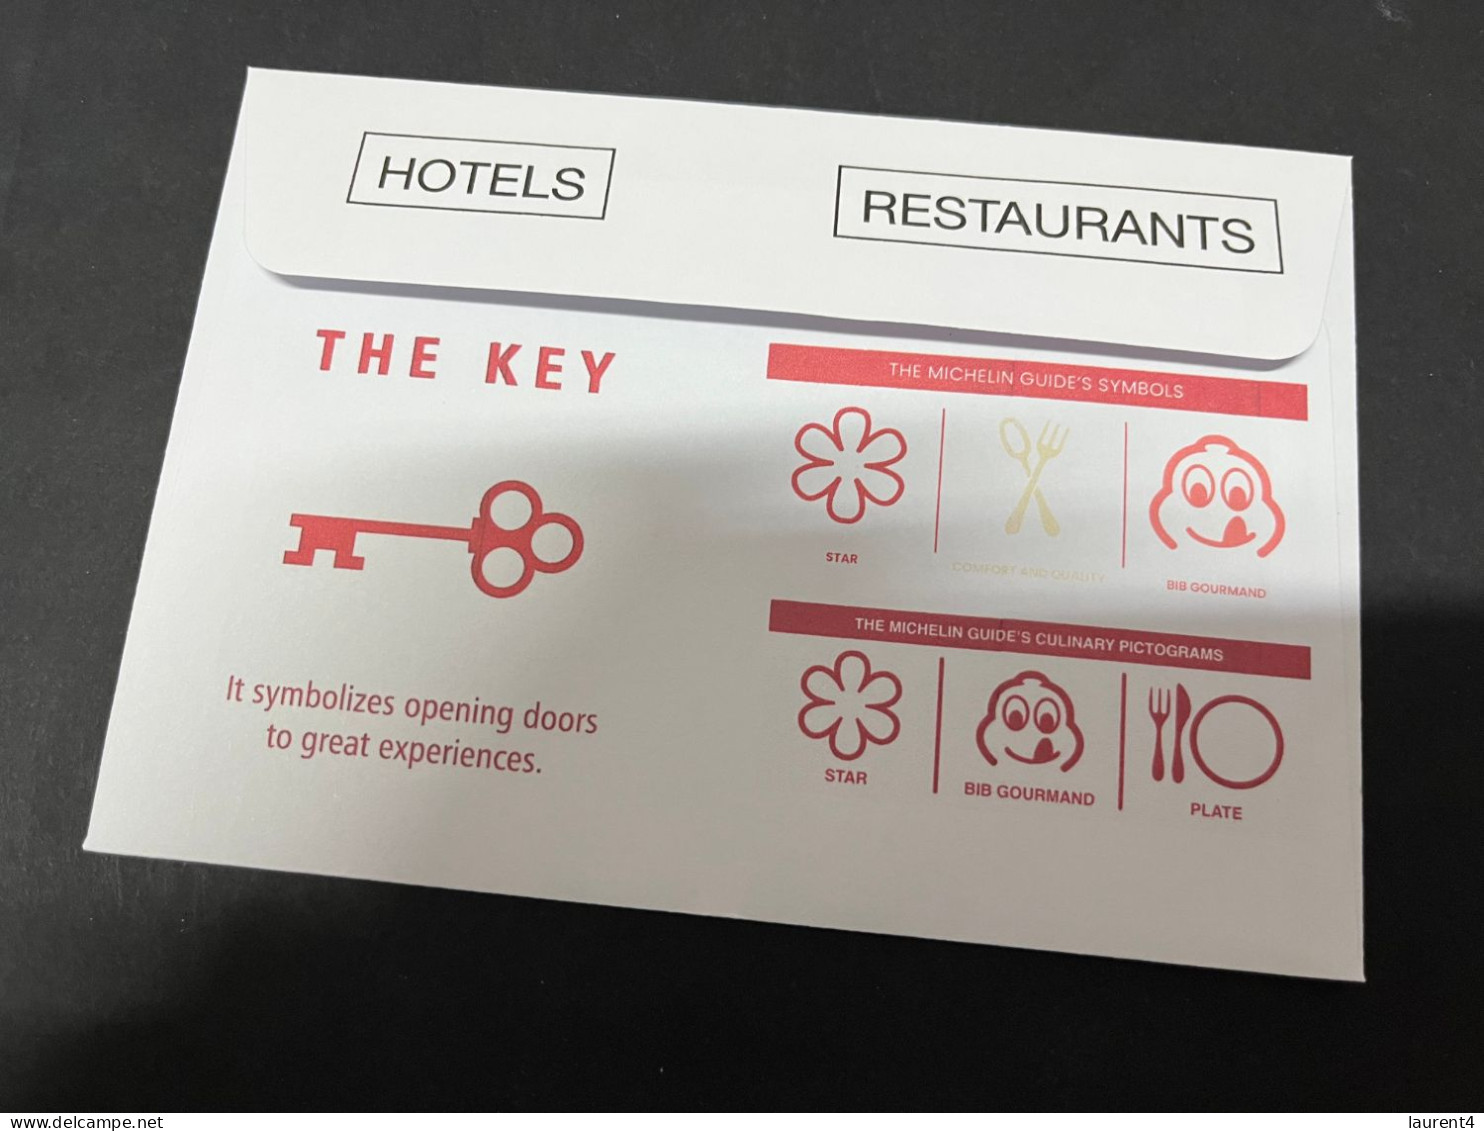 13-10-2023 (4 U 12) France Michelin Guide To Begin Awarding KEYS To The World's Best Hotel In 2024 (meal On Wheels)4 - Hotel- & Gaststättengewerbe